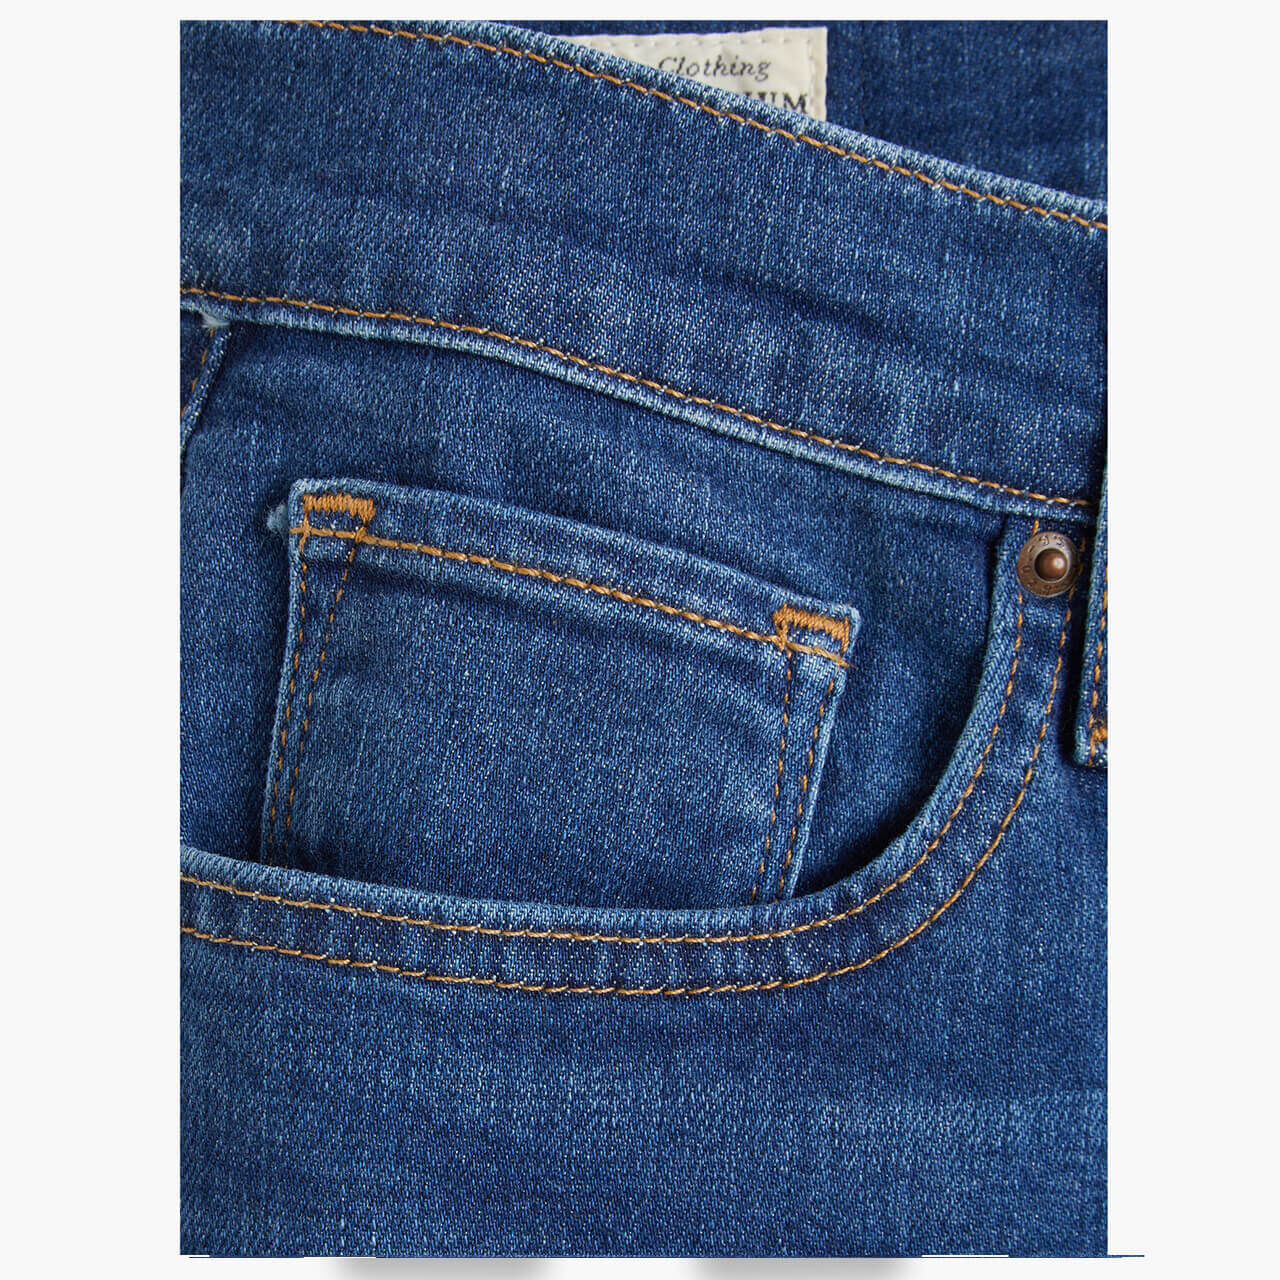 Levis Jeans 724 Straight für Damen in Mittelblau angewaschen, FarbNr.: 0139